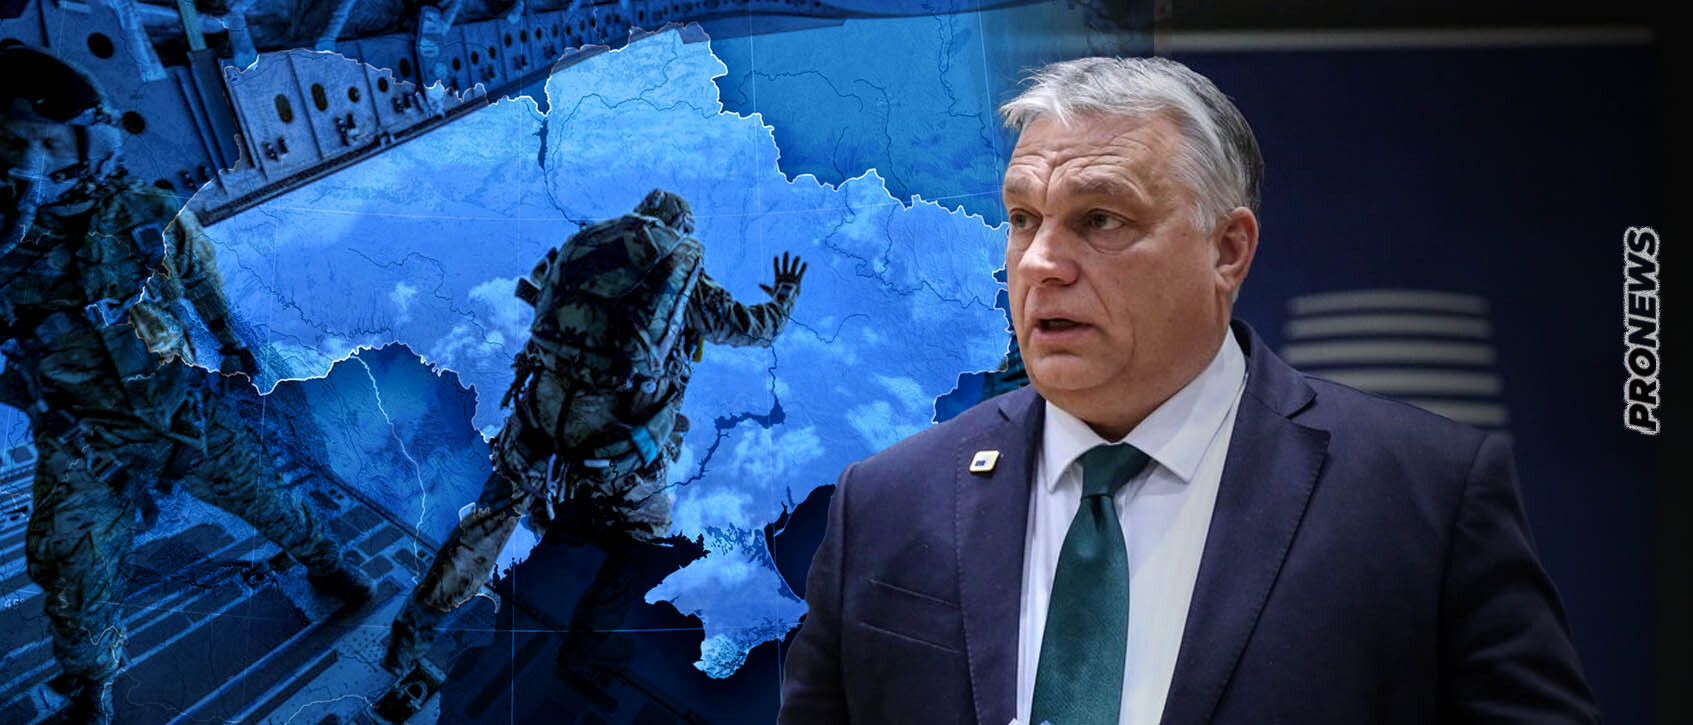 Προς ολοκληρωτική σύγκρουση; – Β.Όρμπαν: «Η Δύση εξετάζει σοβαρά την αποστολή στρατιωτικών δυνάμεων στην Ουκρανία»!